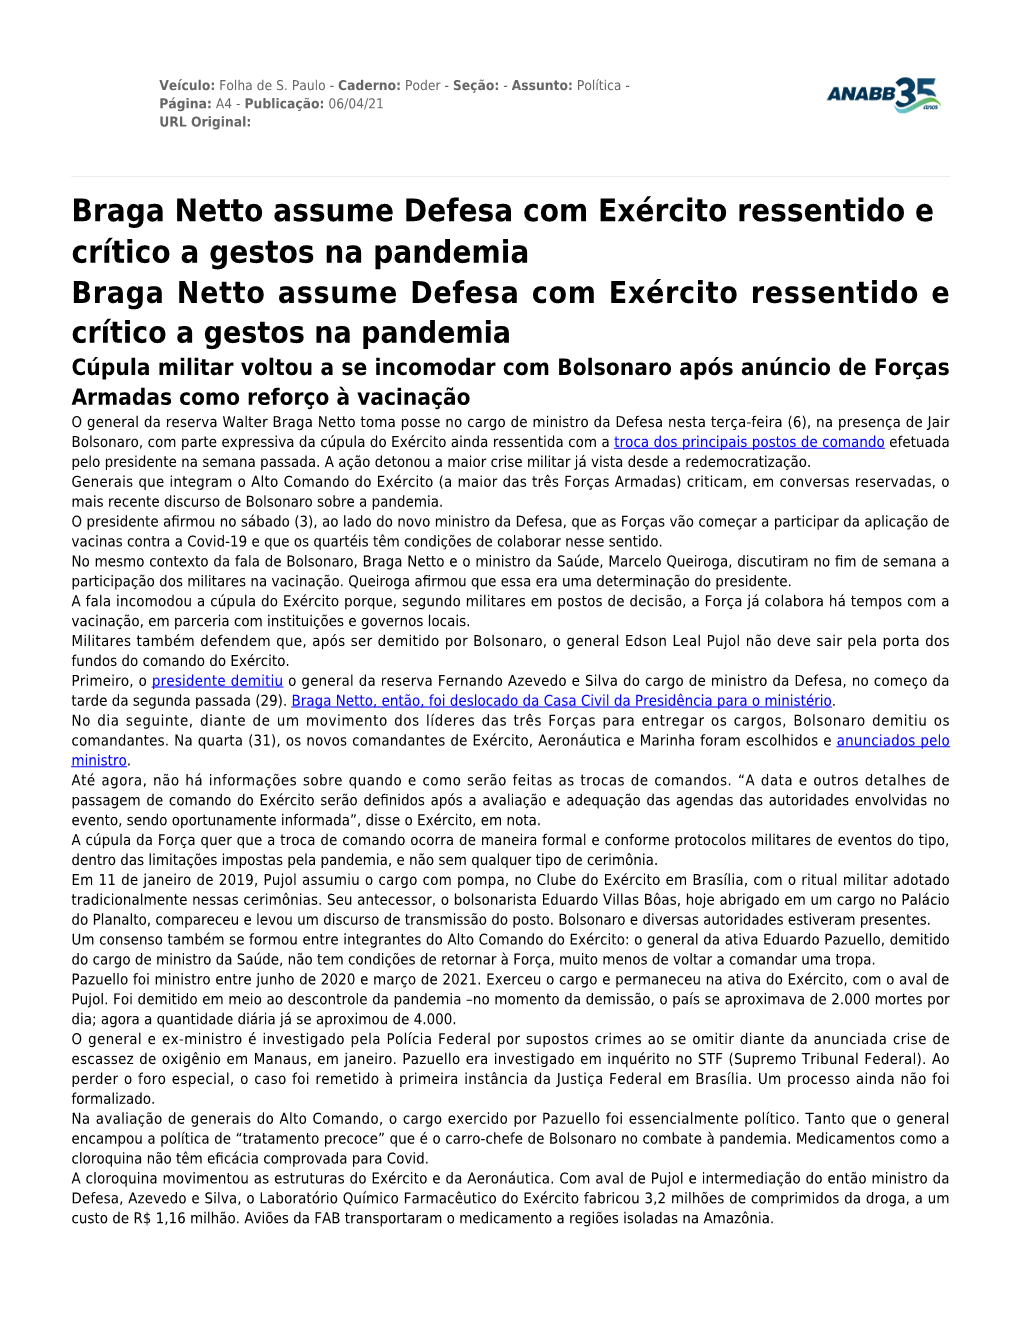 Braga Netto Assume Defesa Com Exército Ressentido E Crítico A